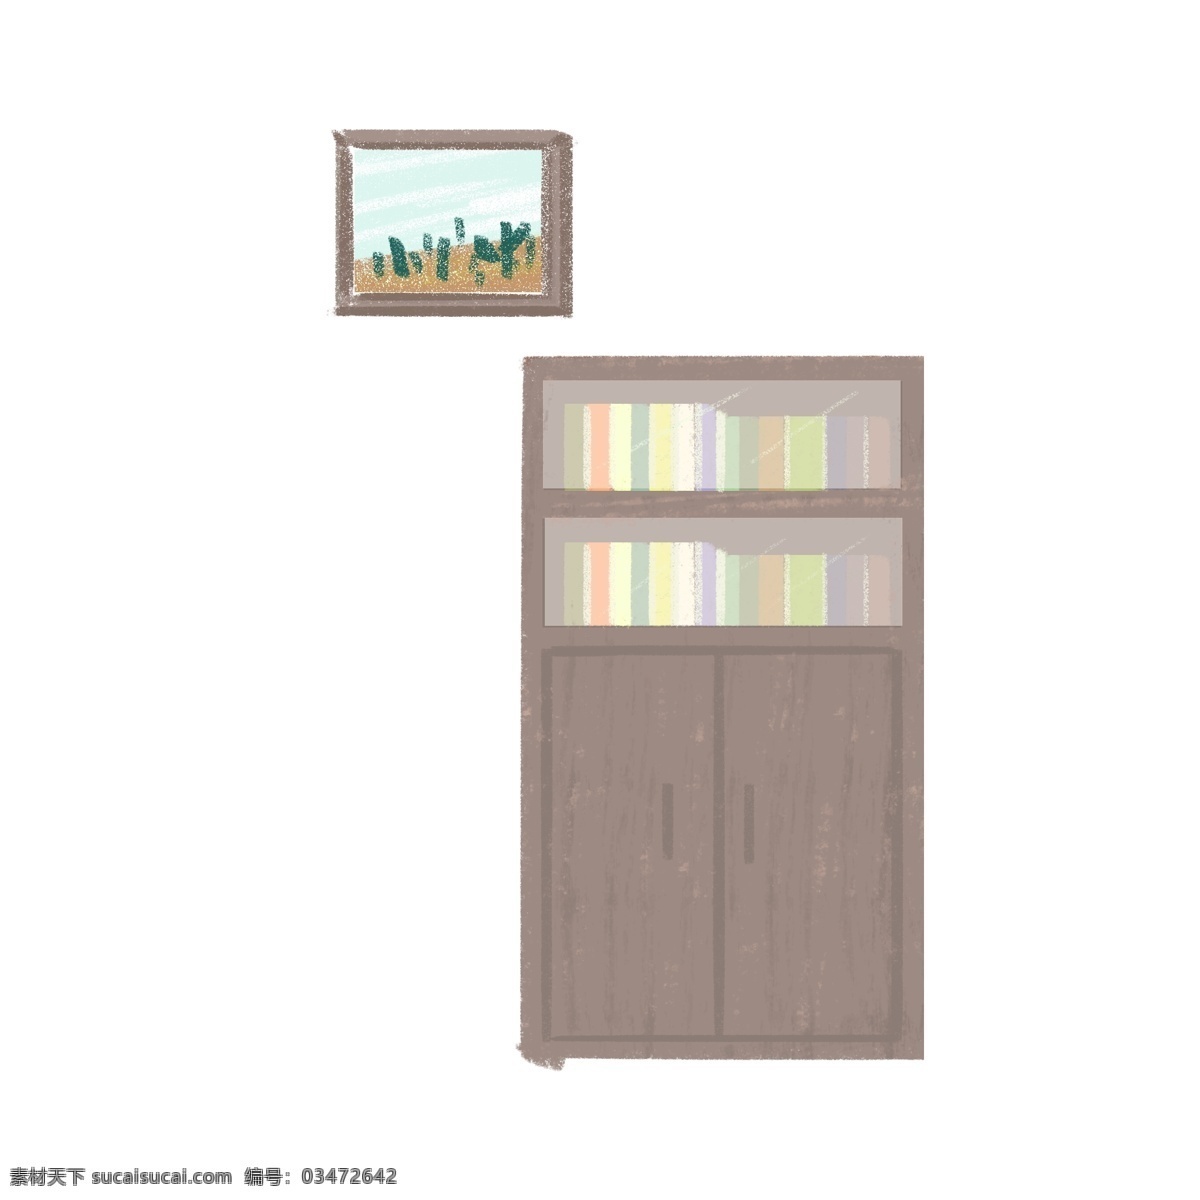 一个 创意 居家 书柜 免 抠 图 柜子 家具 书本 居家书柜 免抠图 灰色柜子 放书的柜子 漂亮的柜子